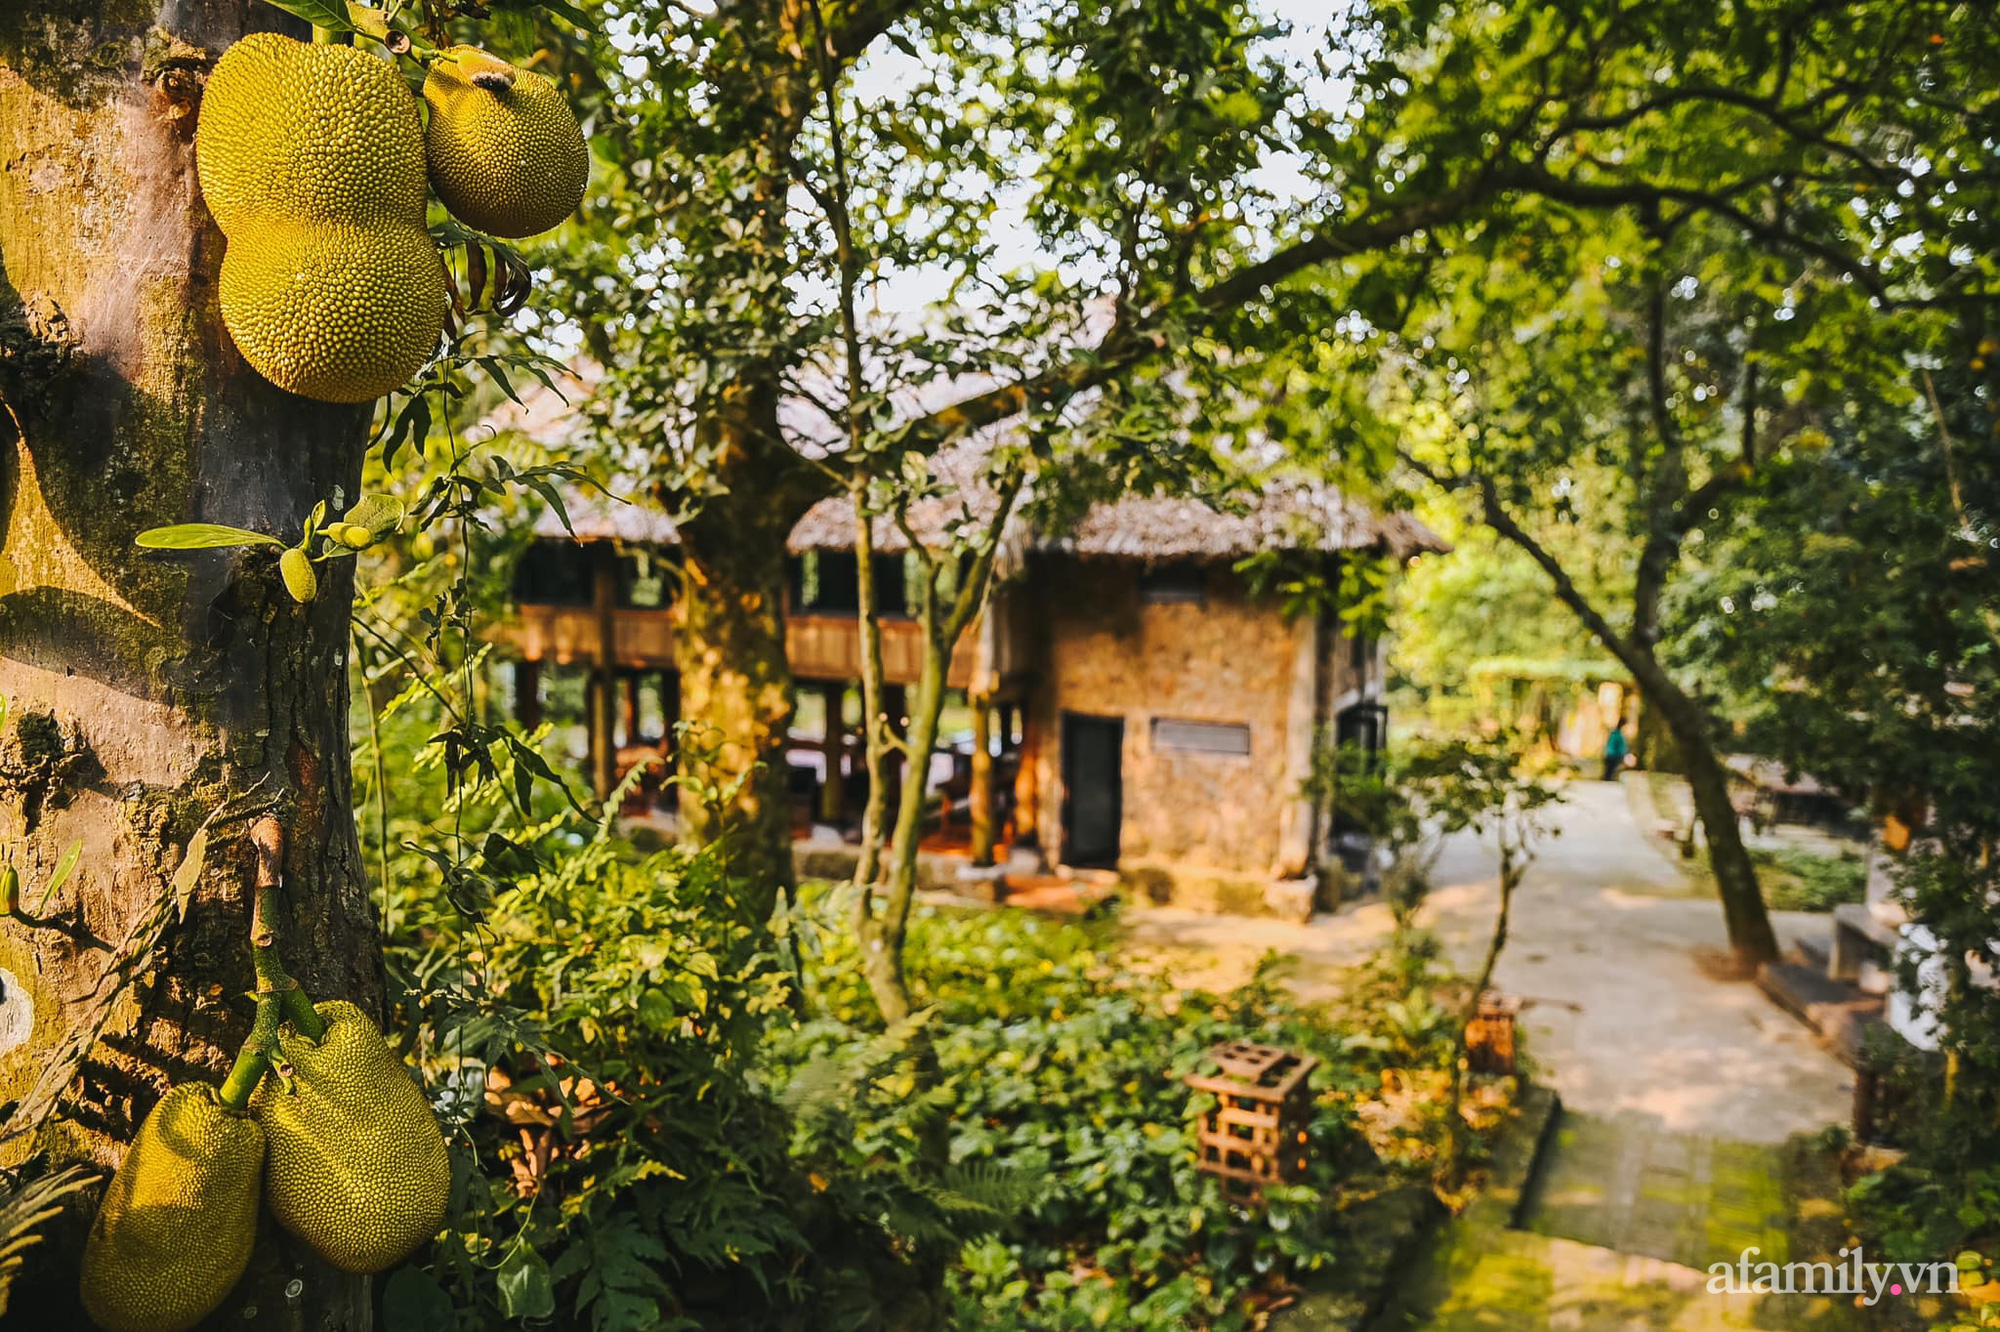 Cuộc sống yên bình trong ngôi nhà nhỏ cùng khu vườn xanh mát bóng cây ở ngoại thành Hà Nội - Ảnh 8.